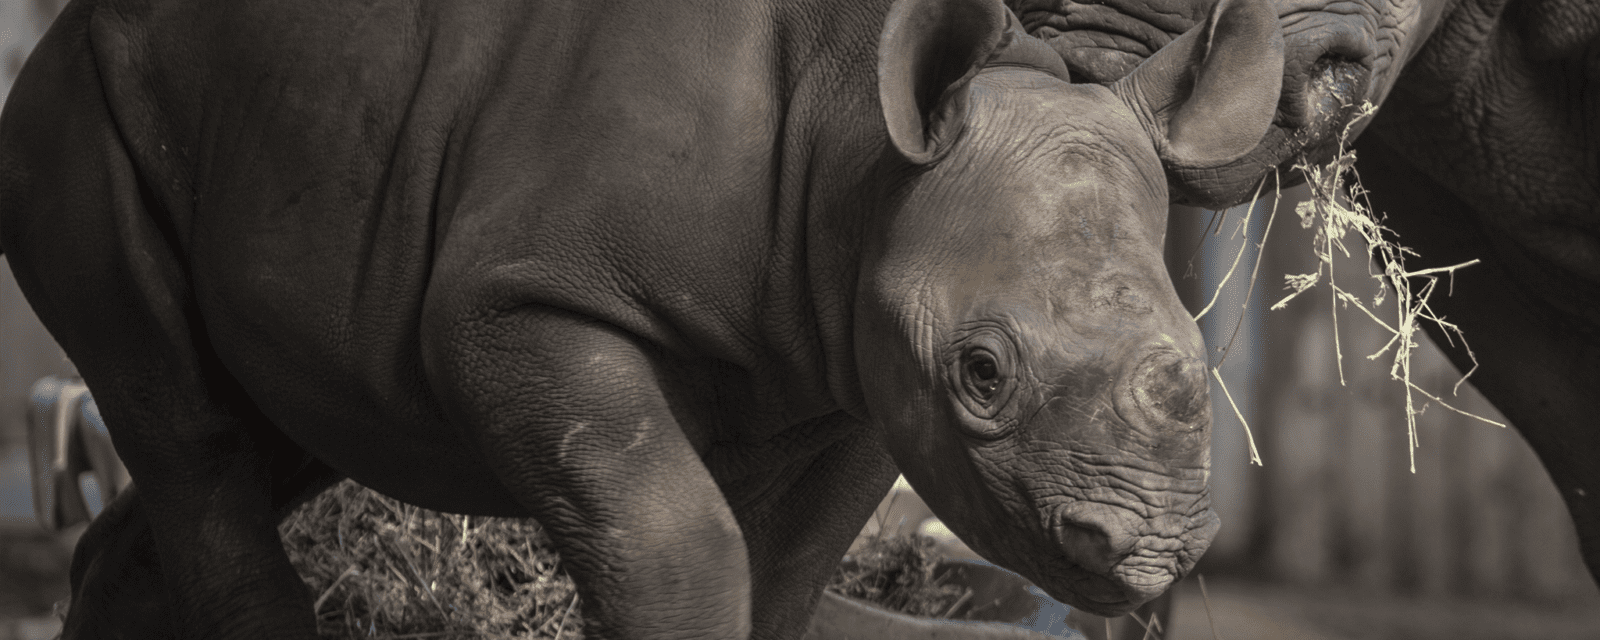 Eastern black rhinoceroses in exhibit